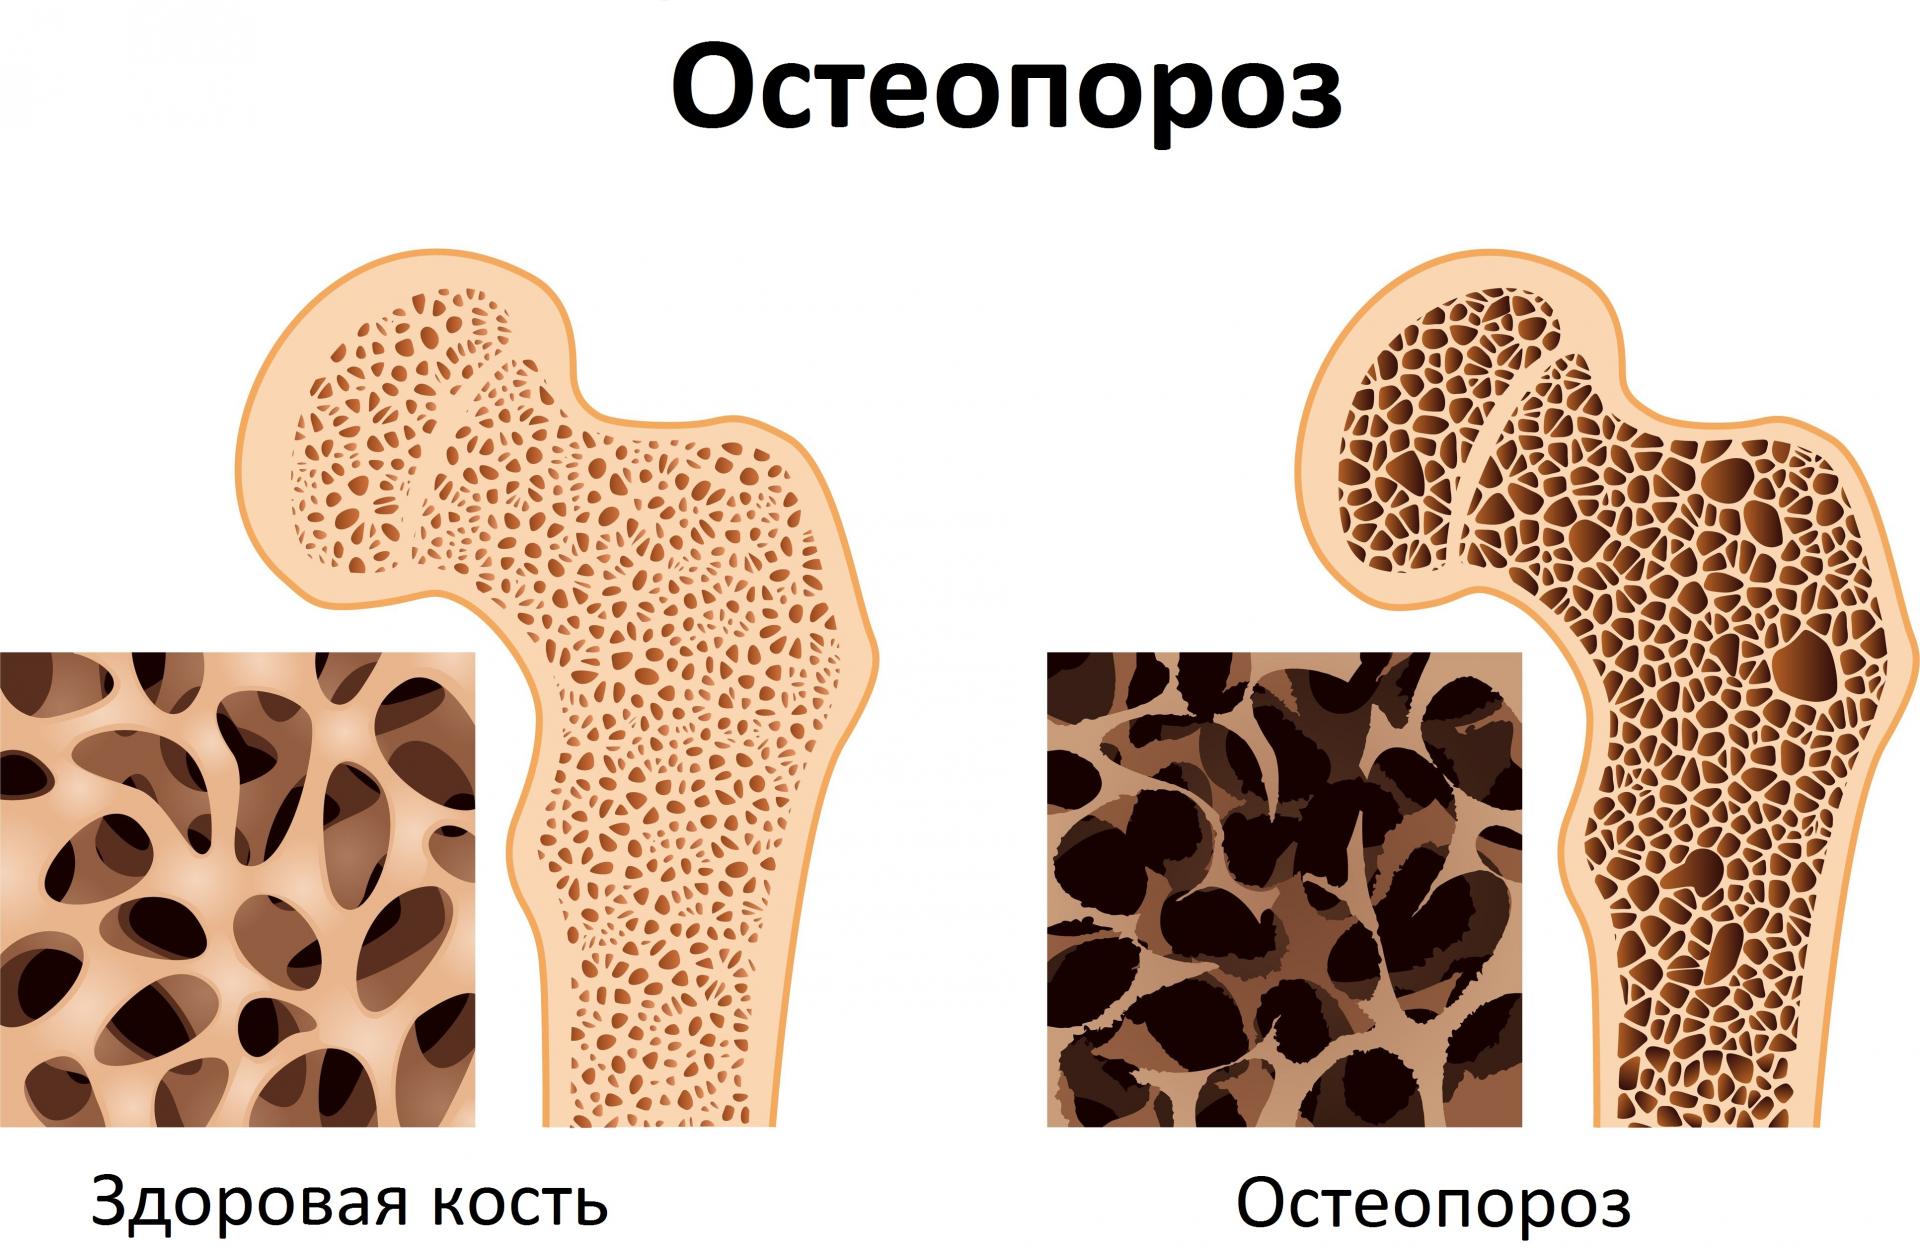 Остеопороз: лечение народными средствами